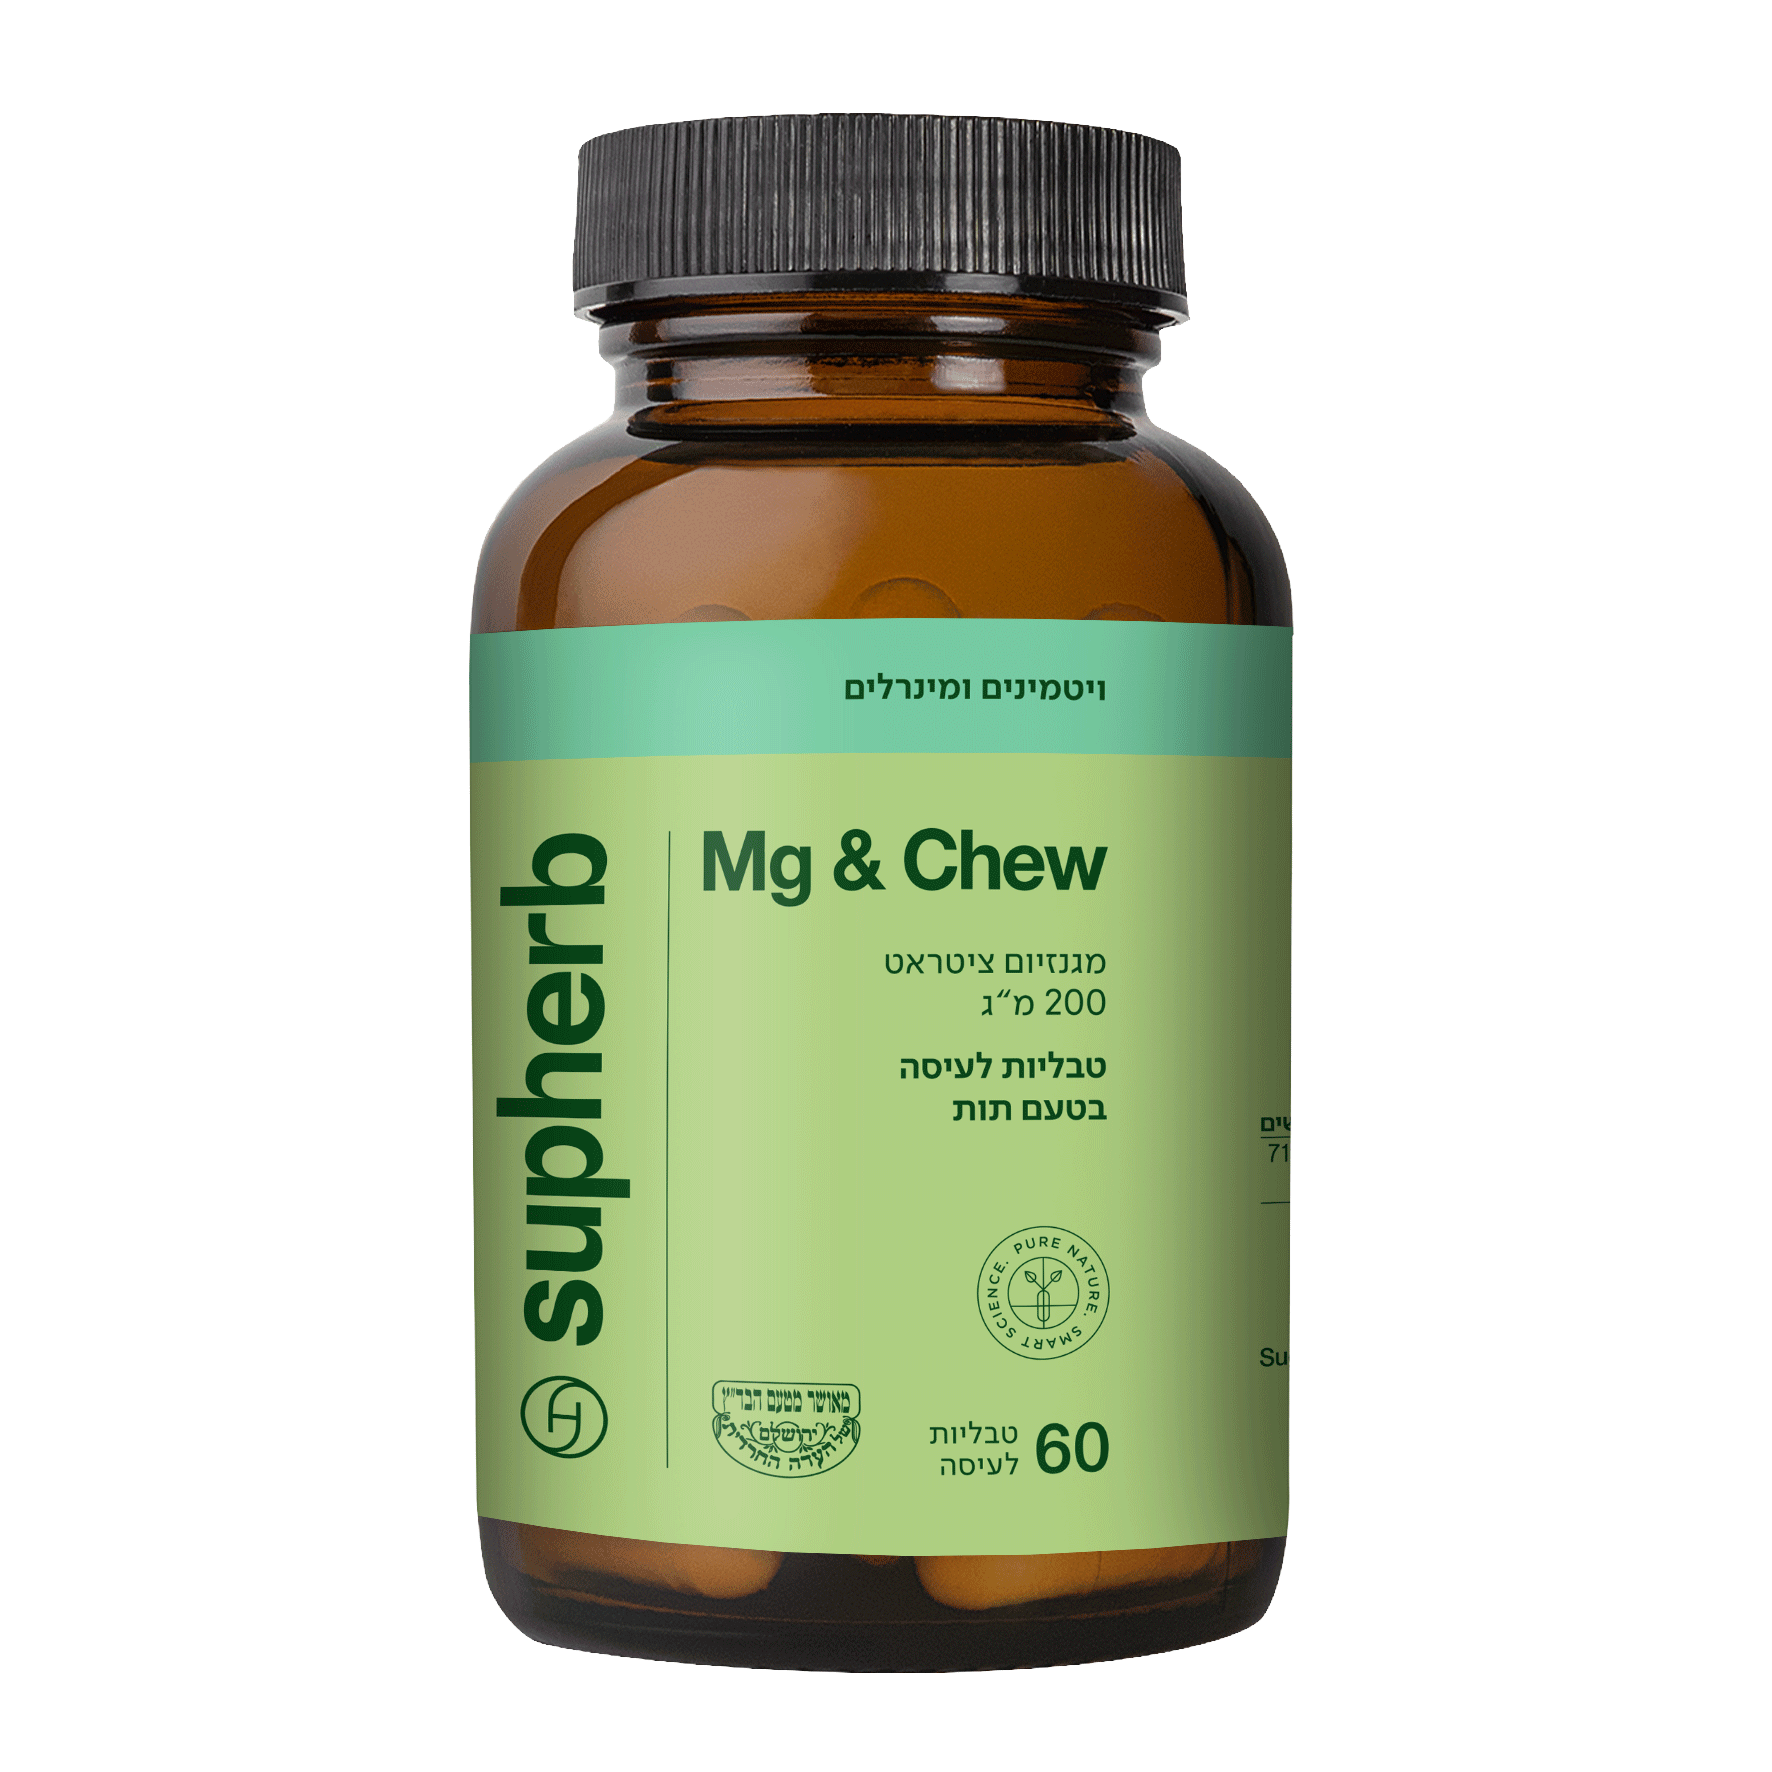 מגנזיום ציטראט בטבליות לעיסה Mg & Chew